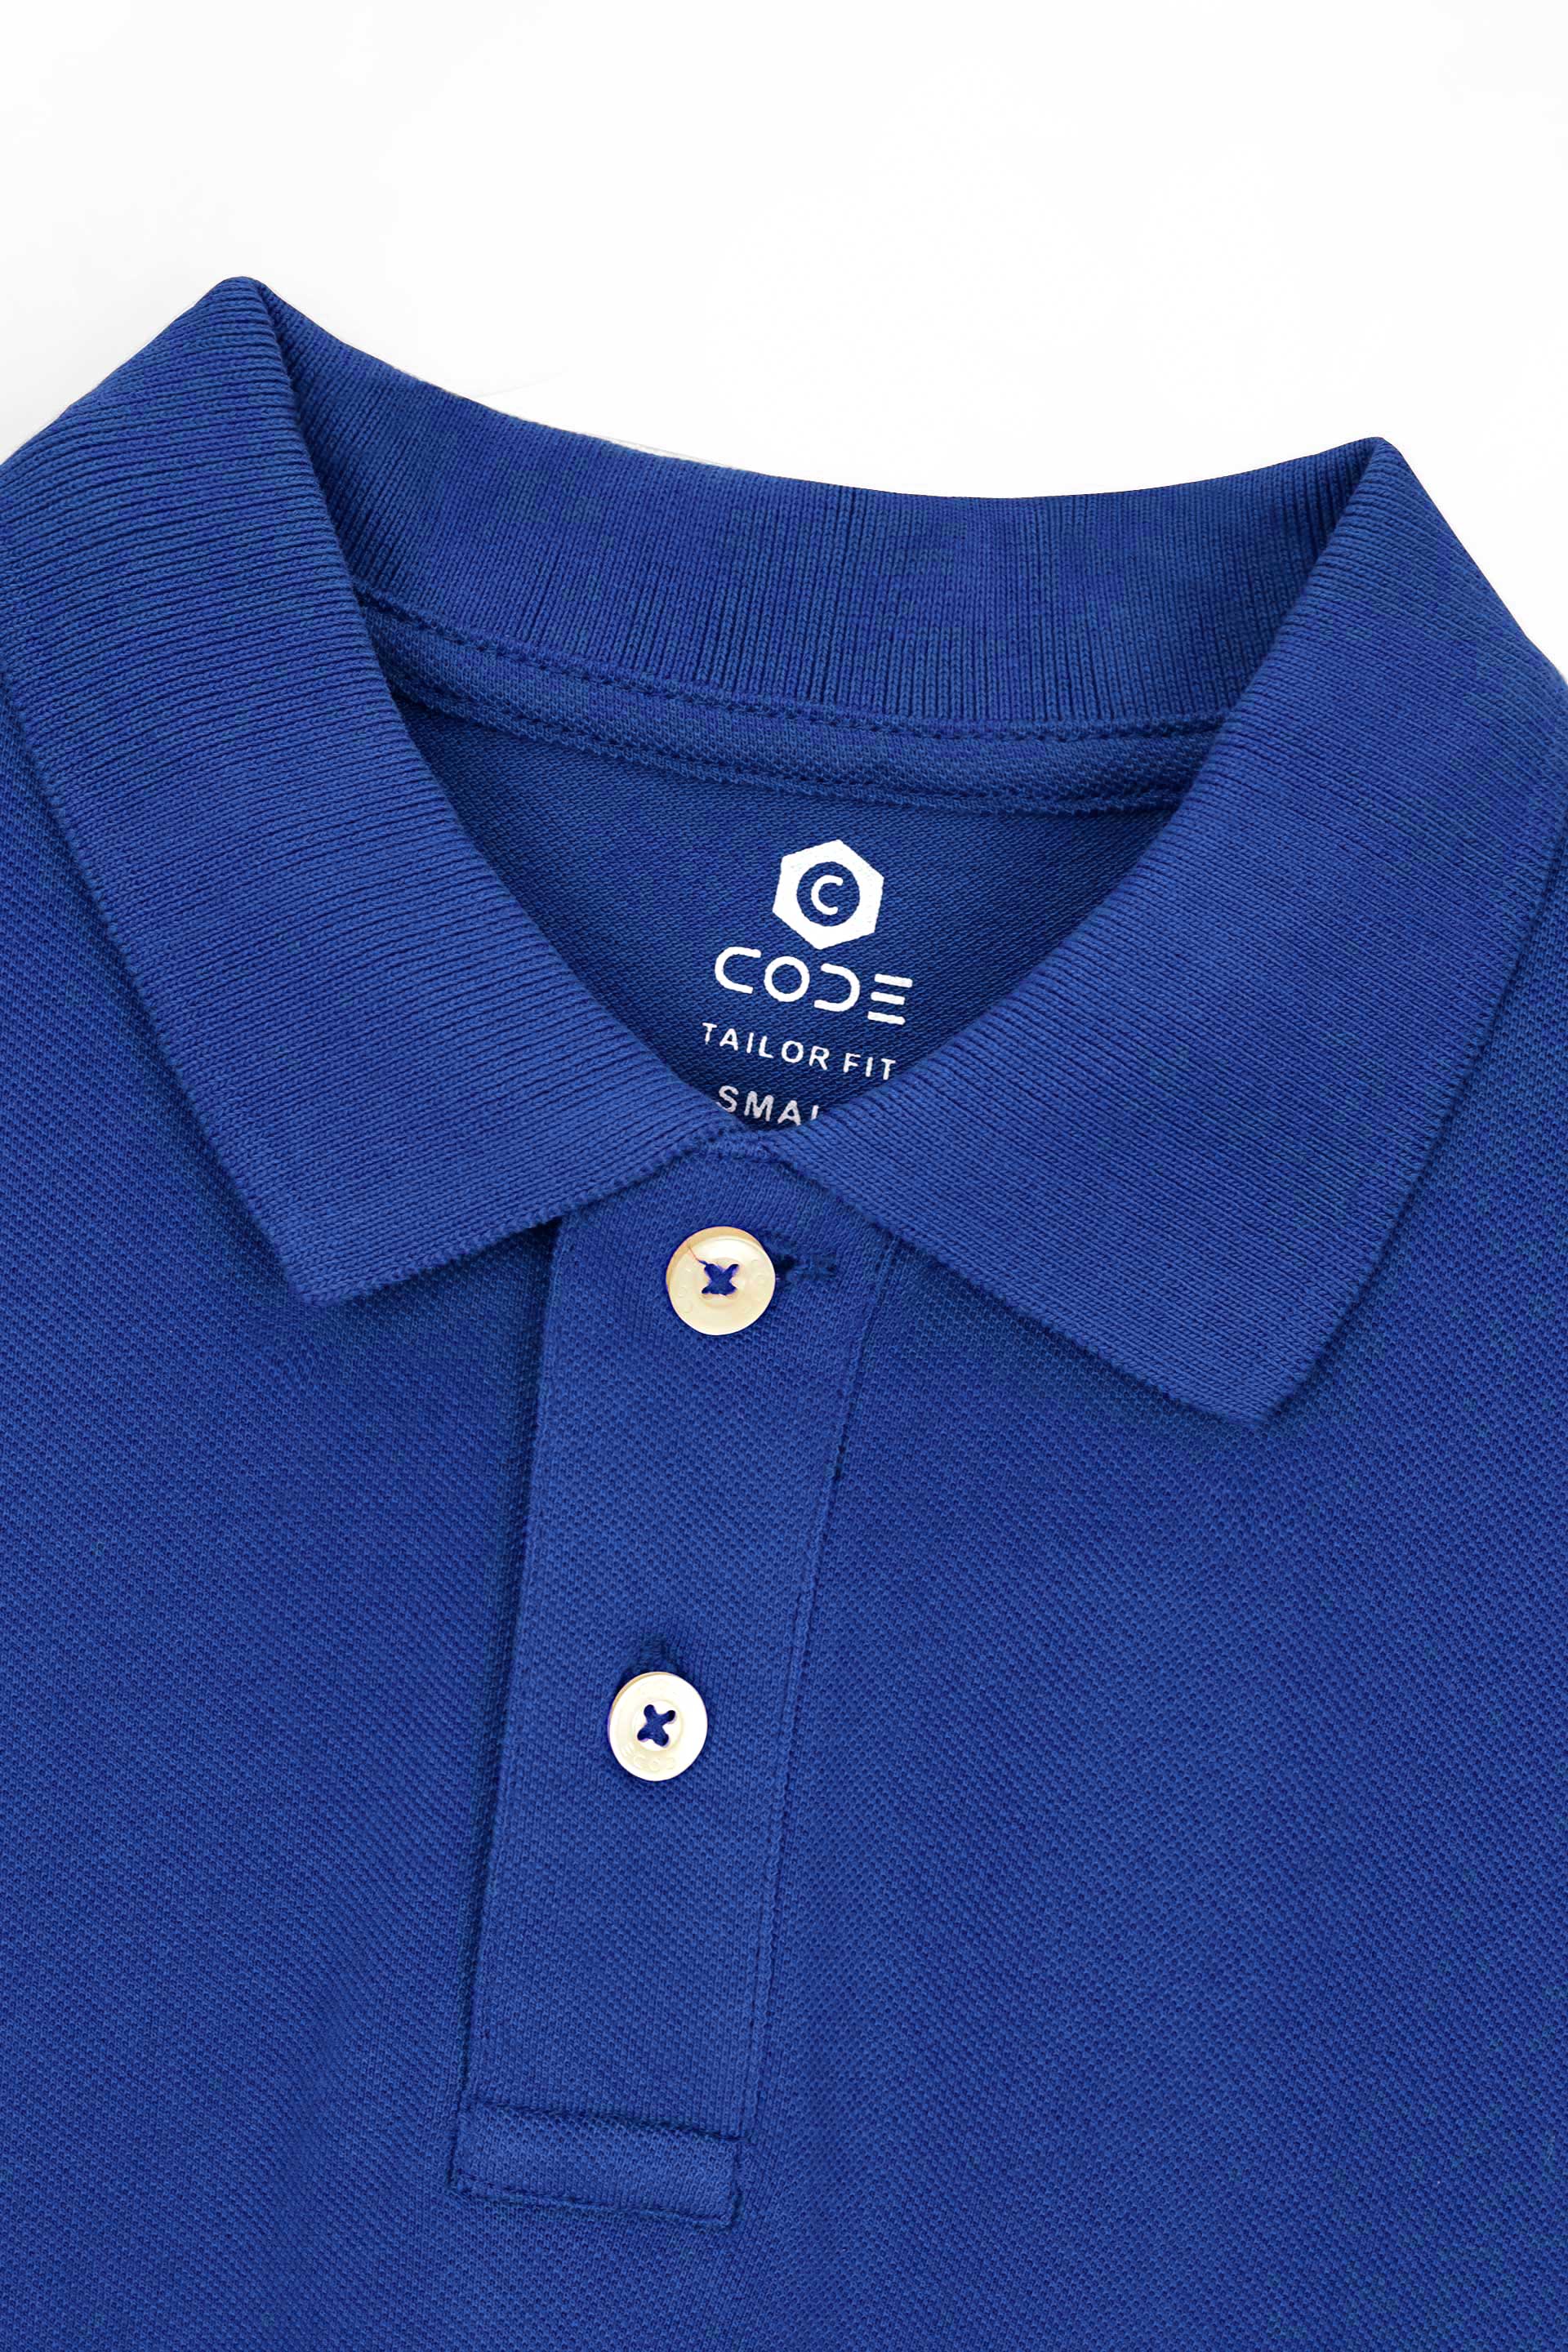 Royal Blue Pique Polo Shirt